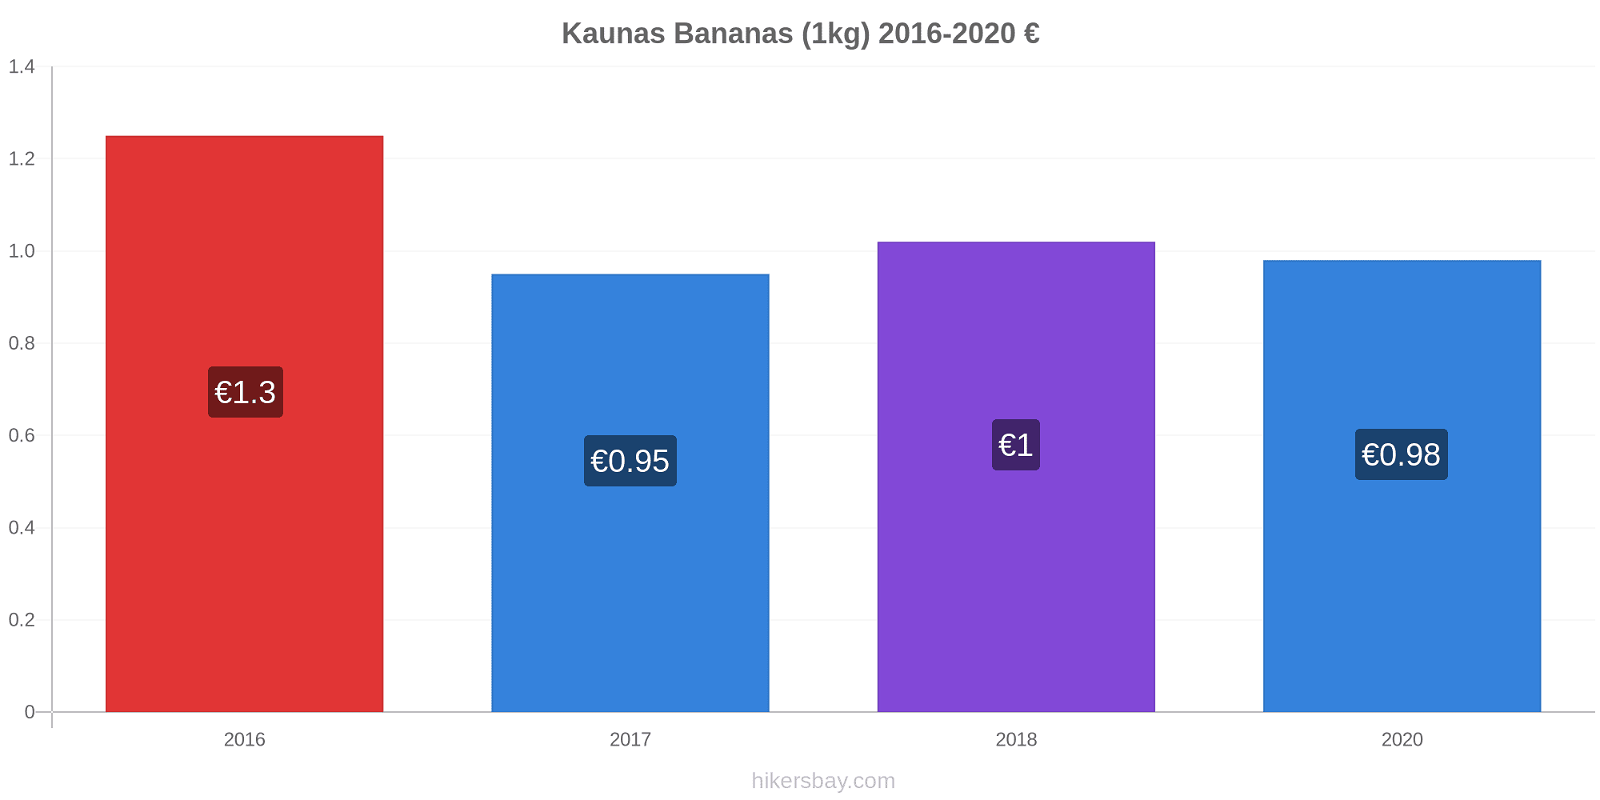 Kaunas variação de preço Banana (1kg) hikersbay.com